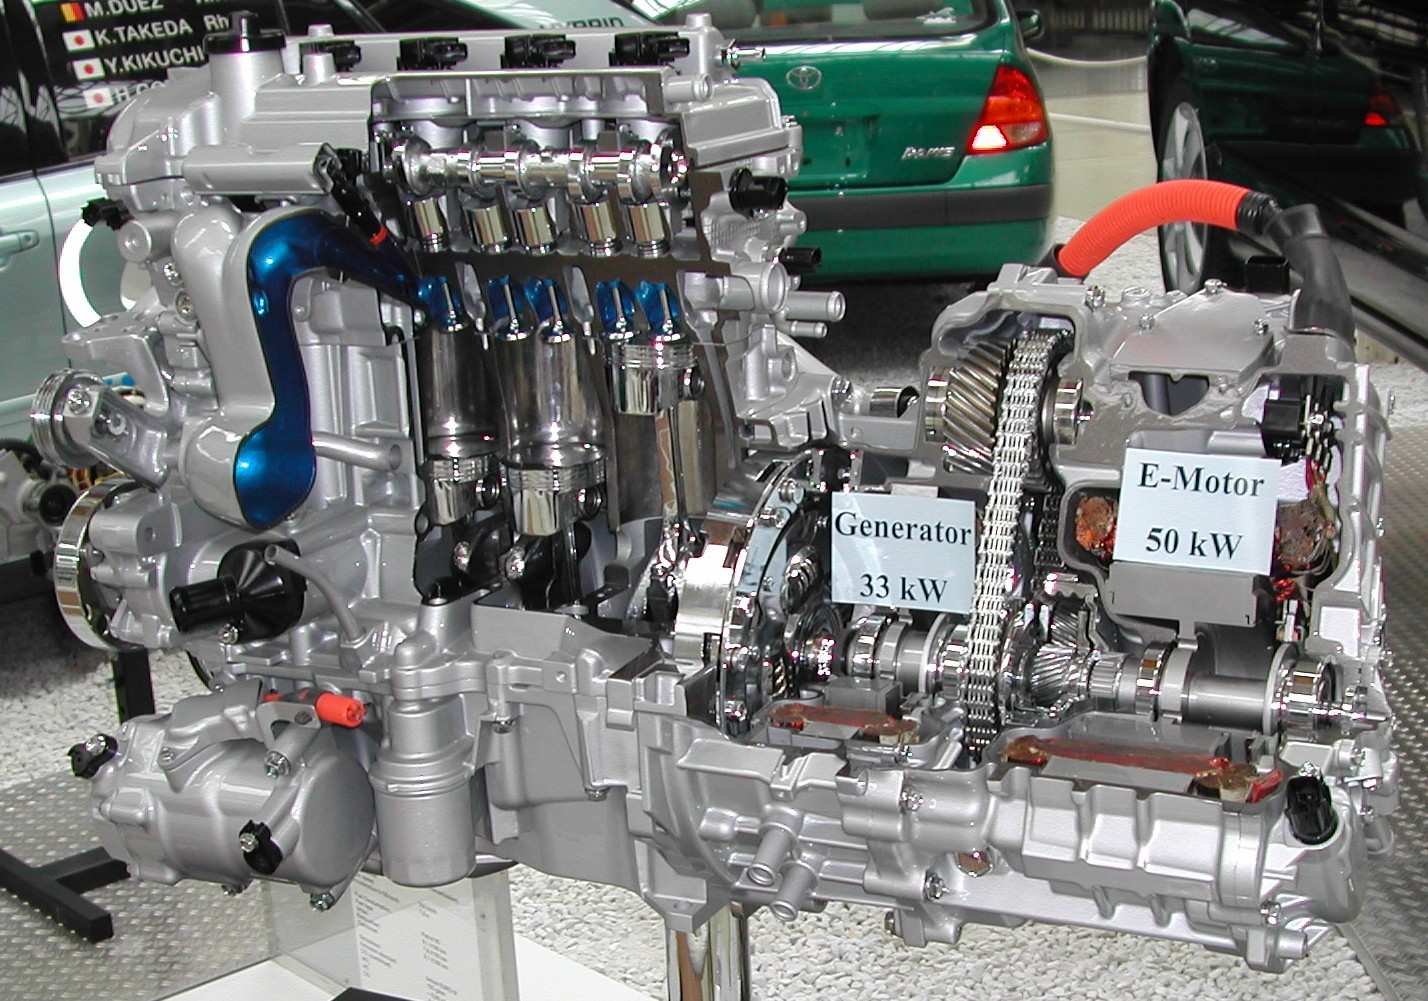 Rovněž již byl sestrojen hybridní motor, u kterého se využívá kombinace dieselova a ottova motoru, tento motor vyvinula v roce 2007 firma Mercedes-Benz a pojmenovala jej